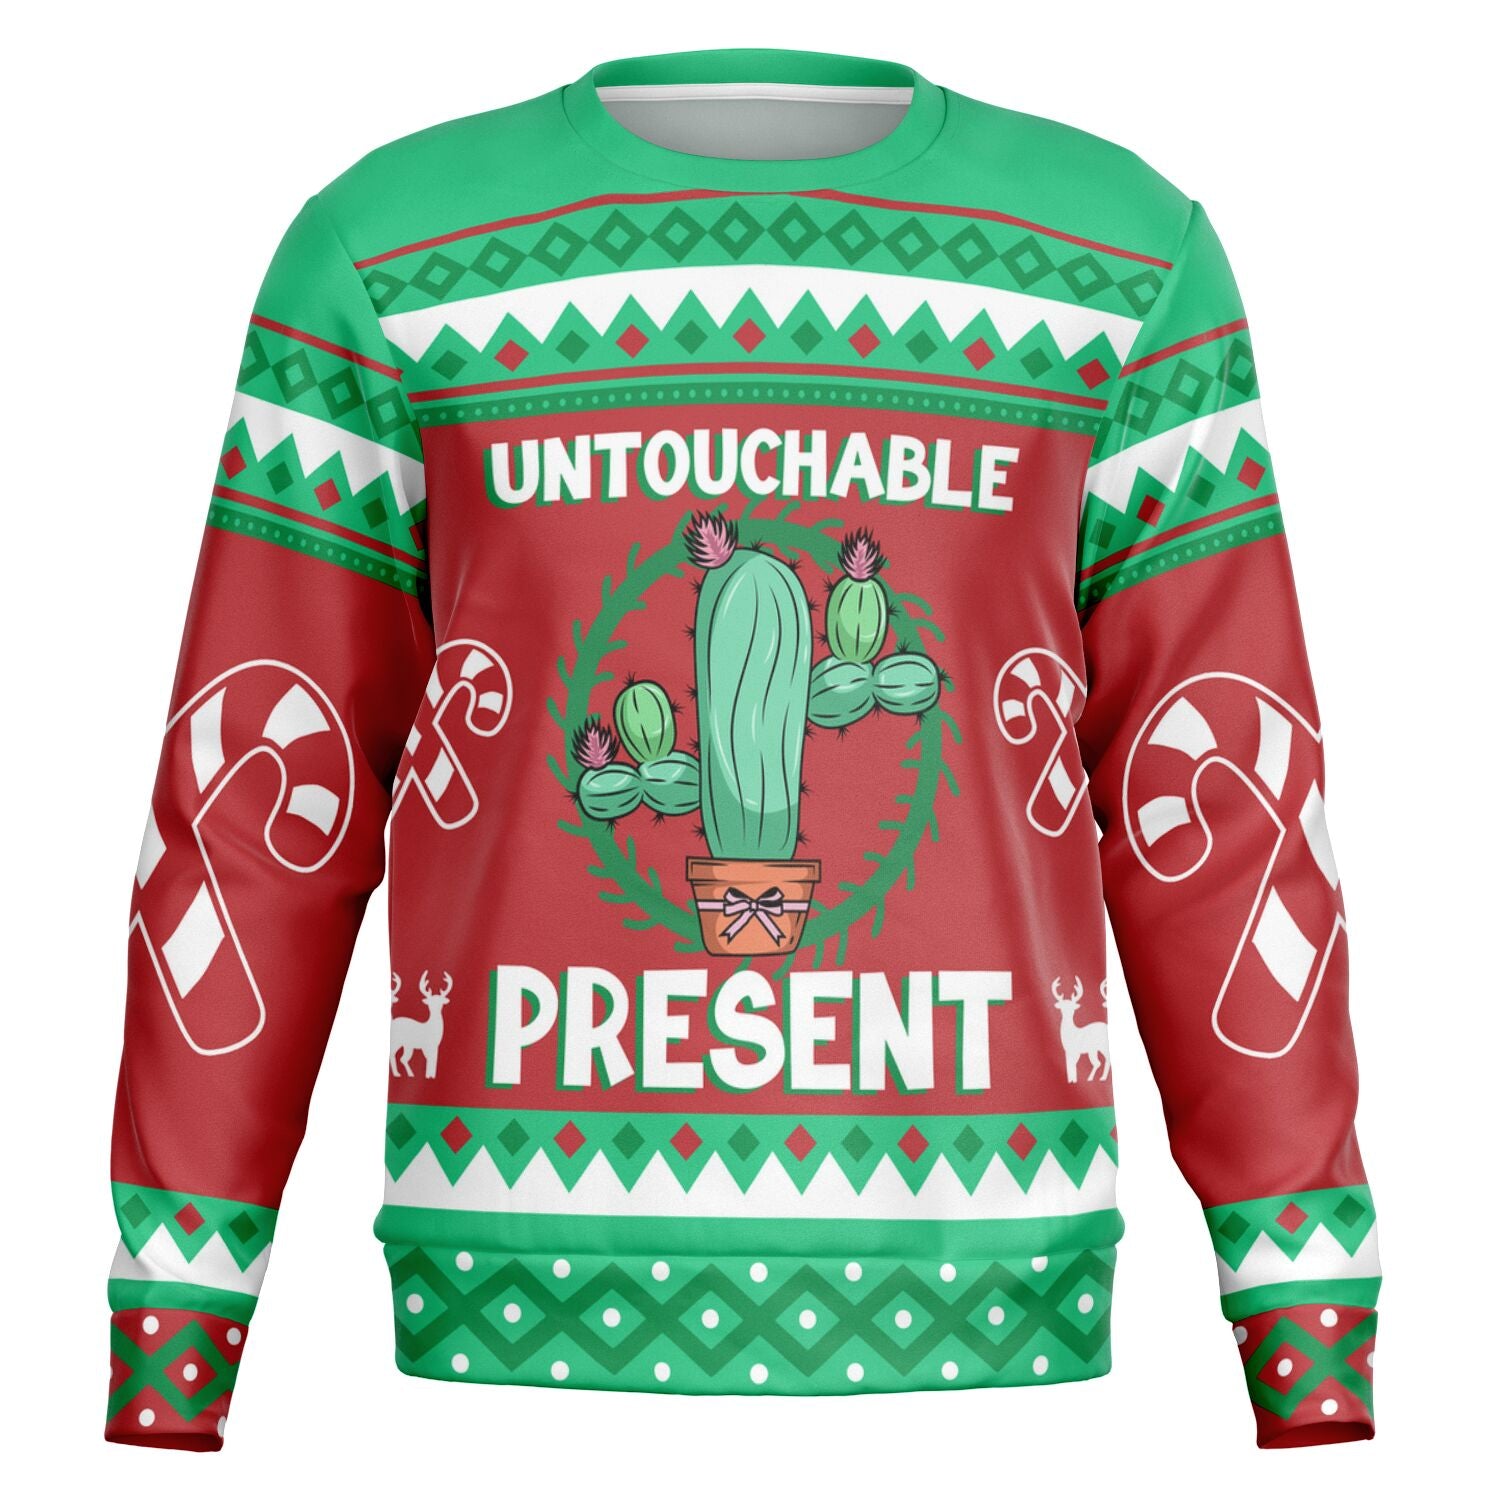 Untouchable Sweatshirt